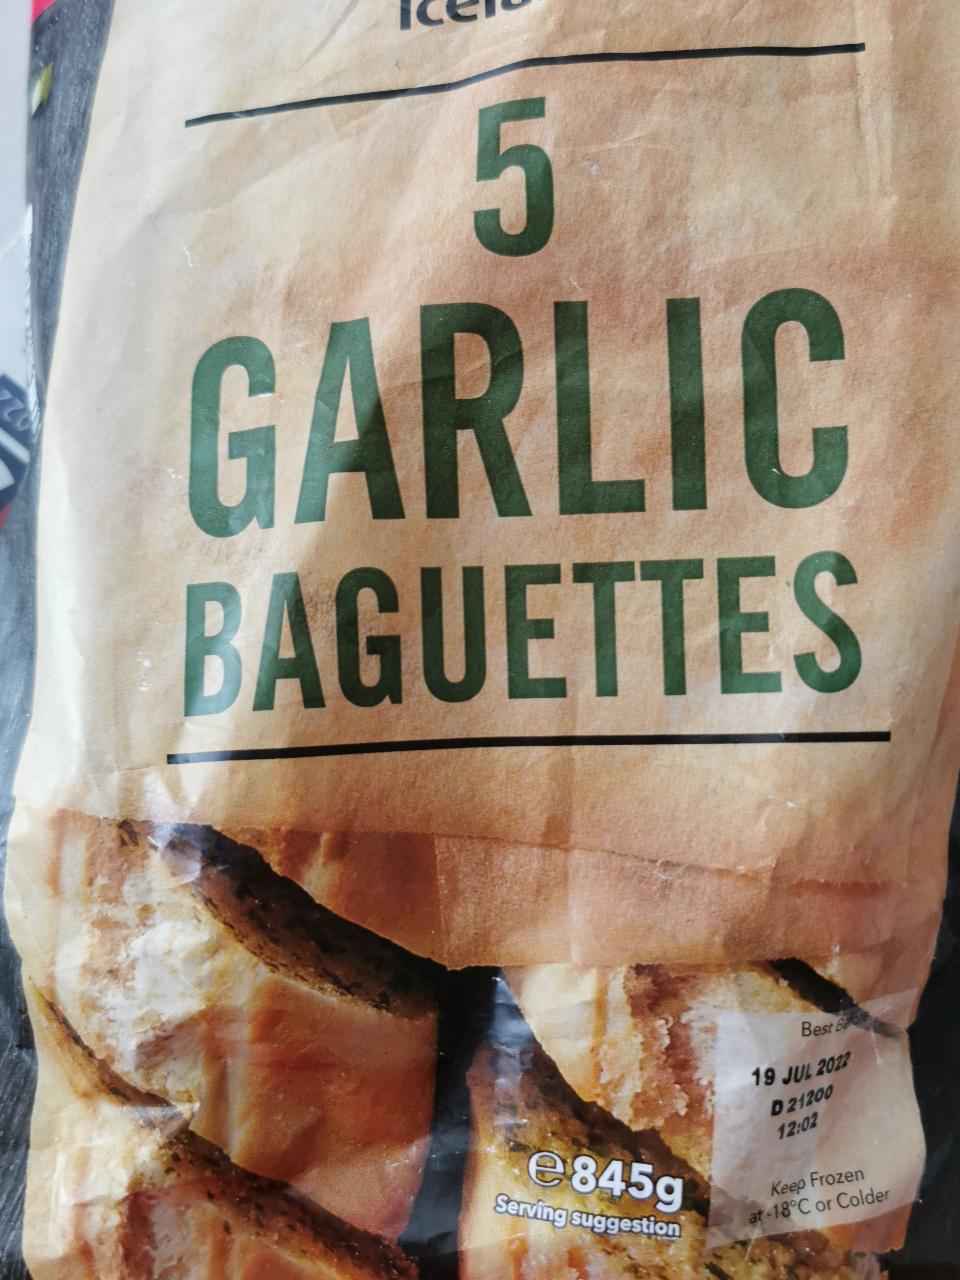 Fotografie - 5 Garlic Baguettes Iceland